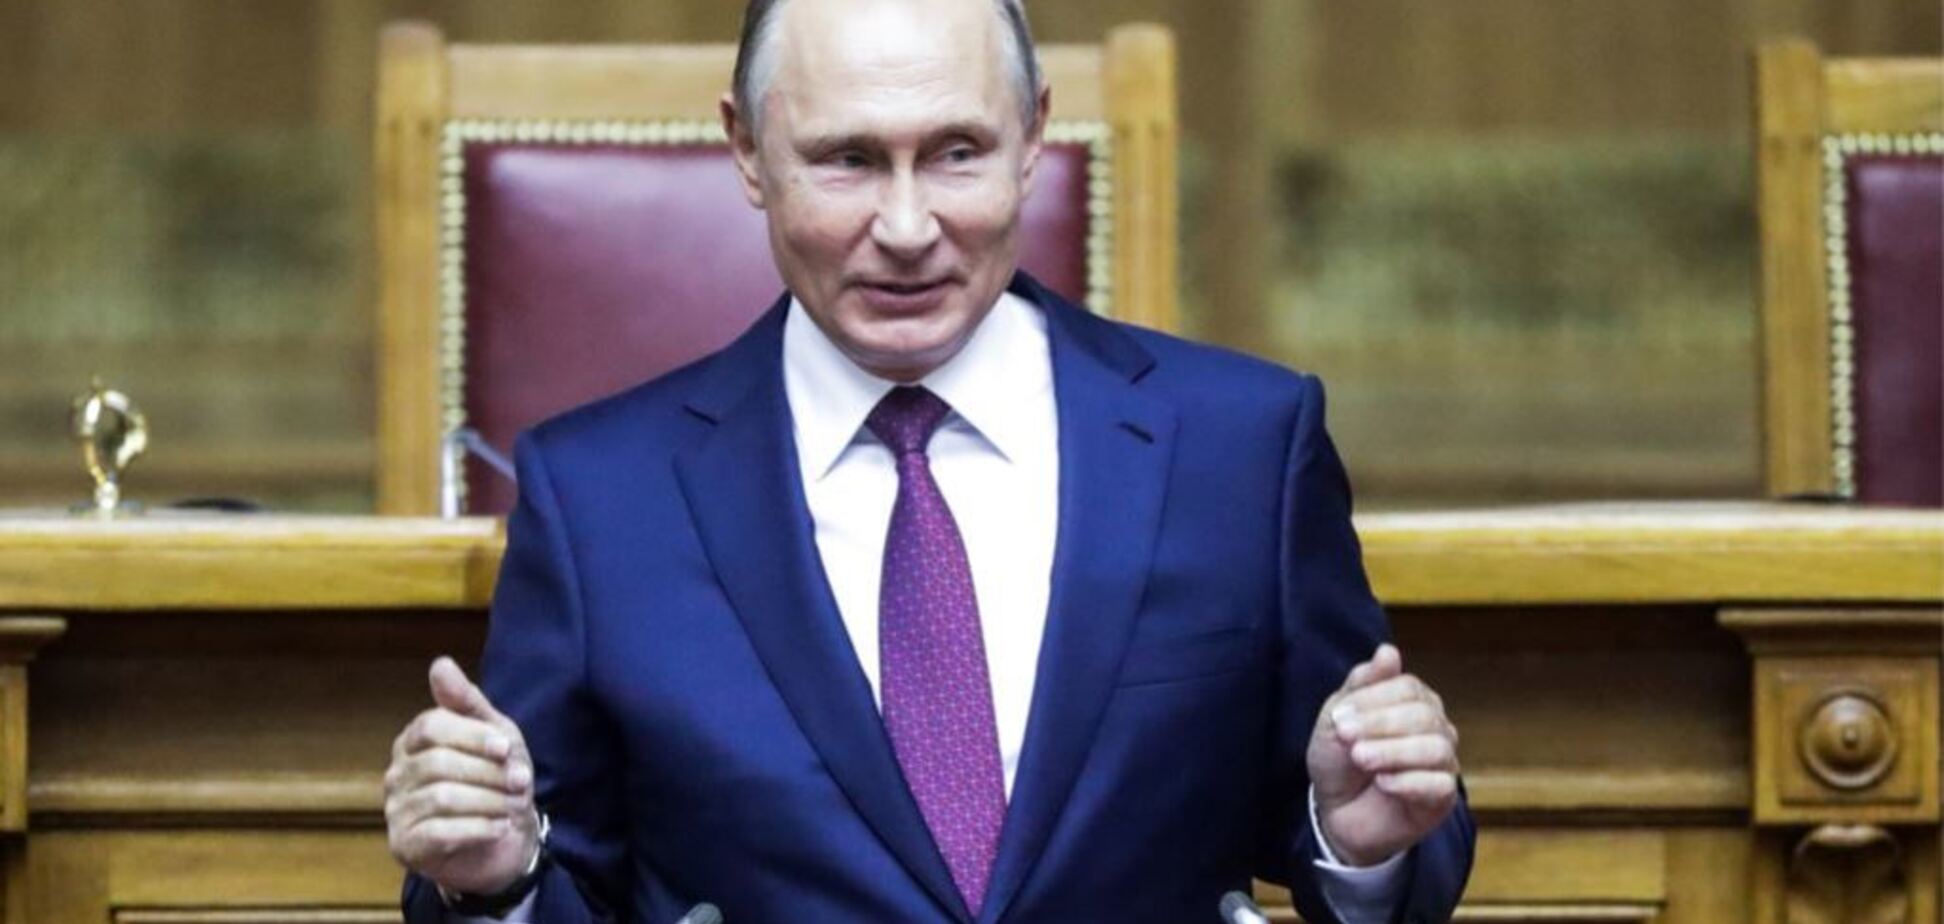 ''На пол-ладони'': сеть озадачил новый фокус Путина со внешностью